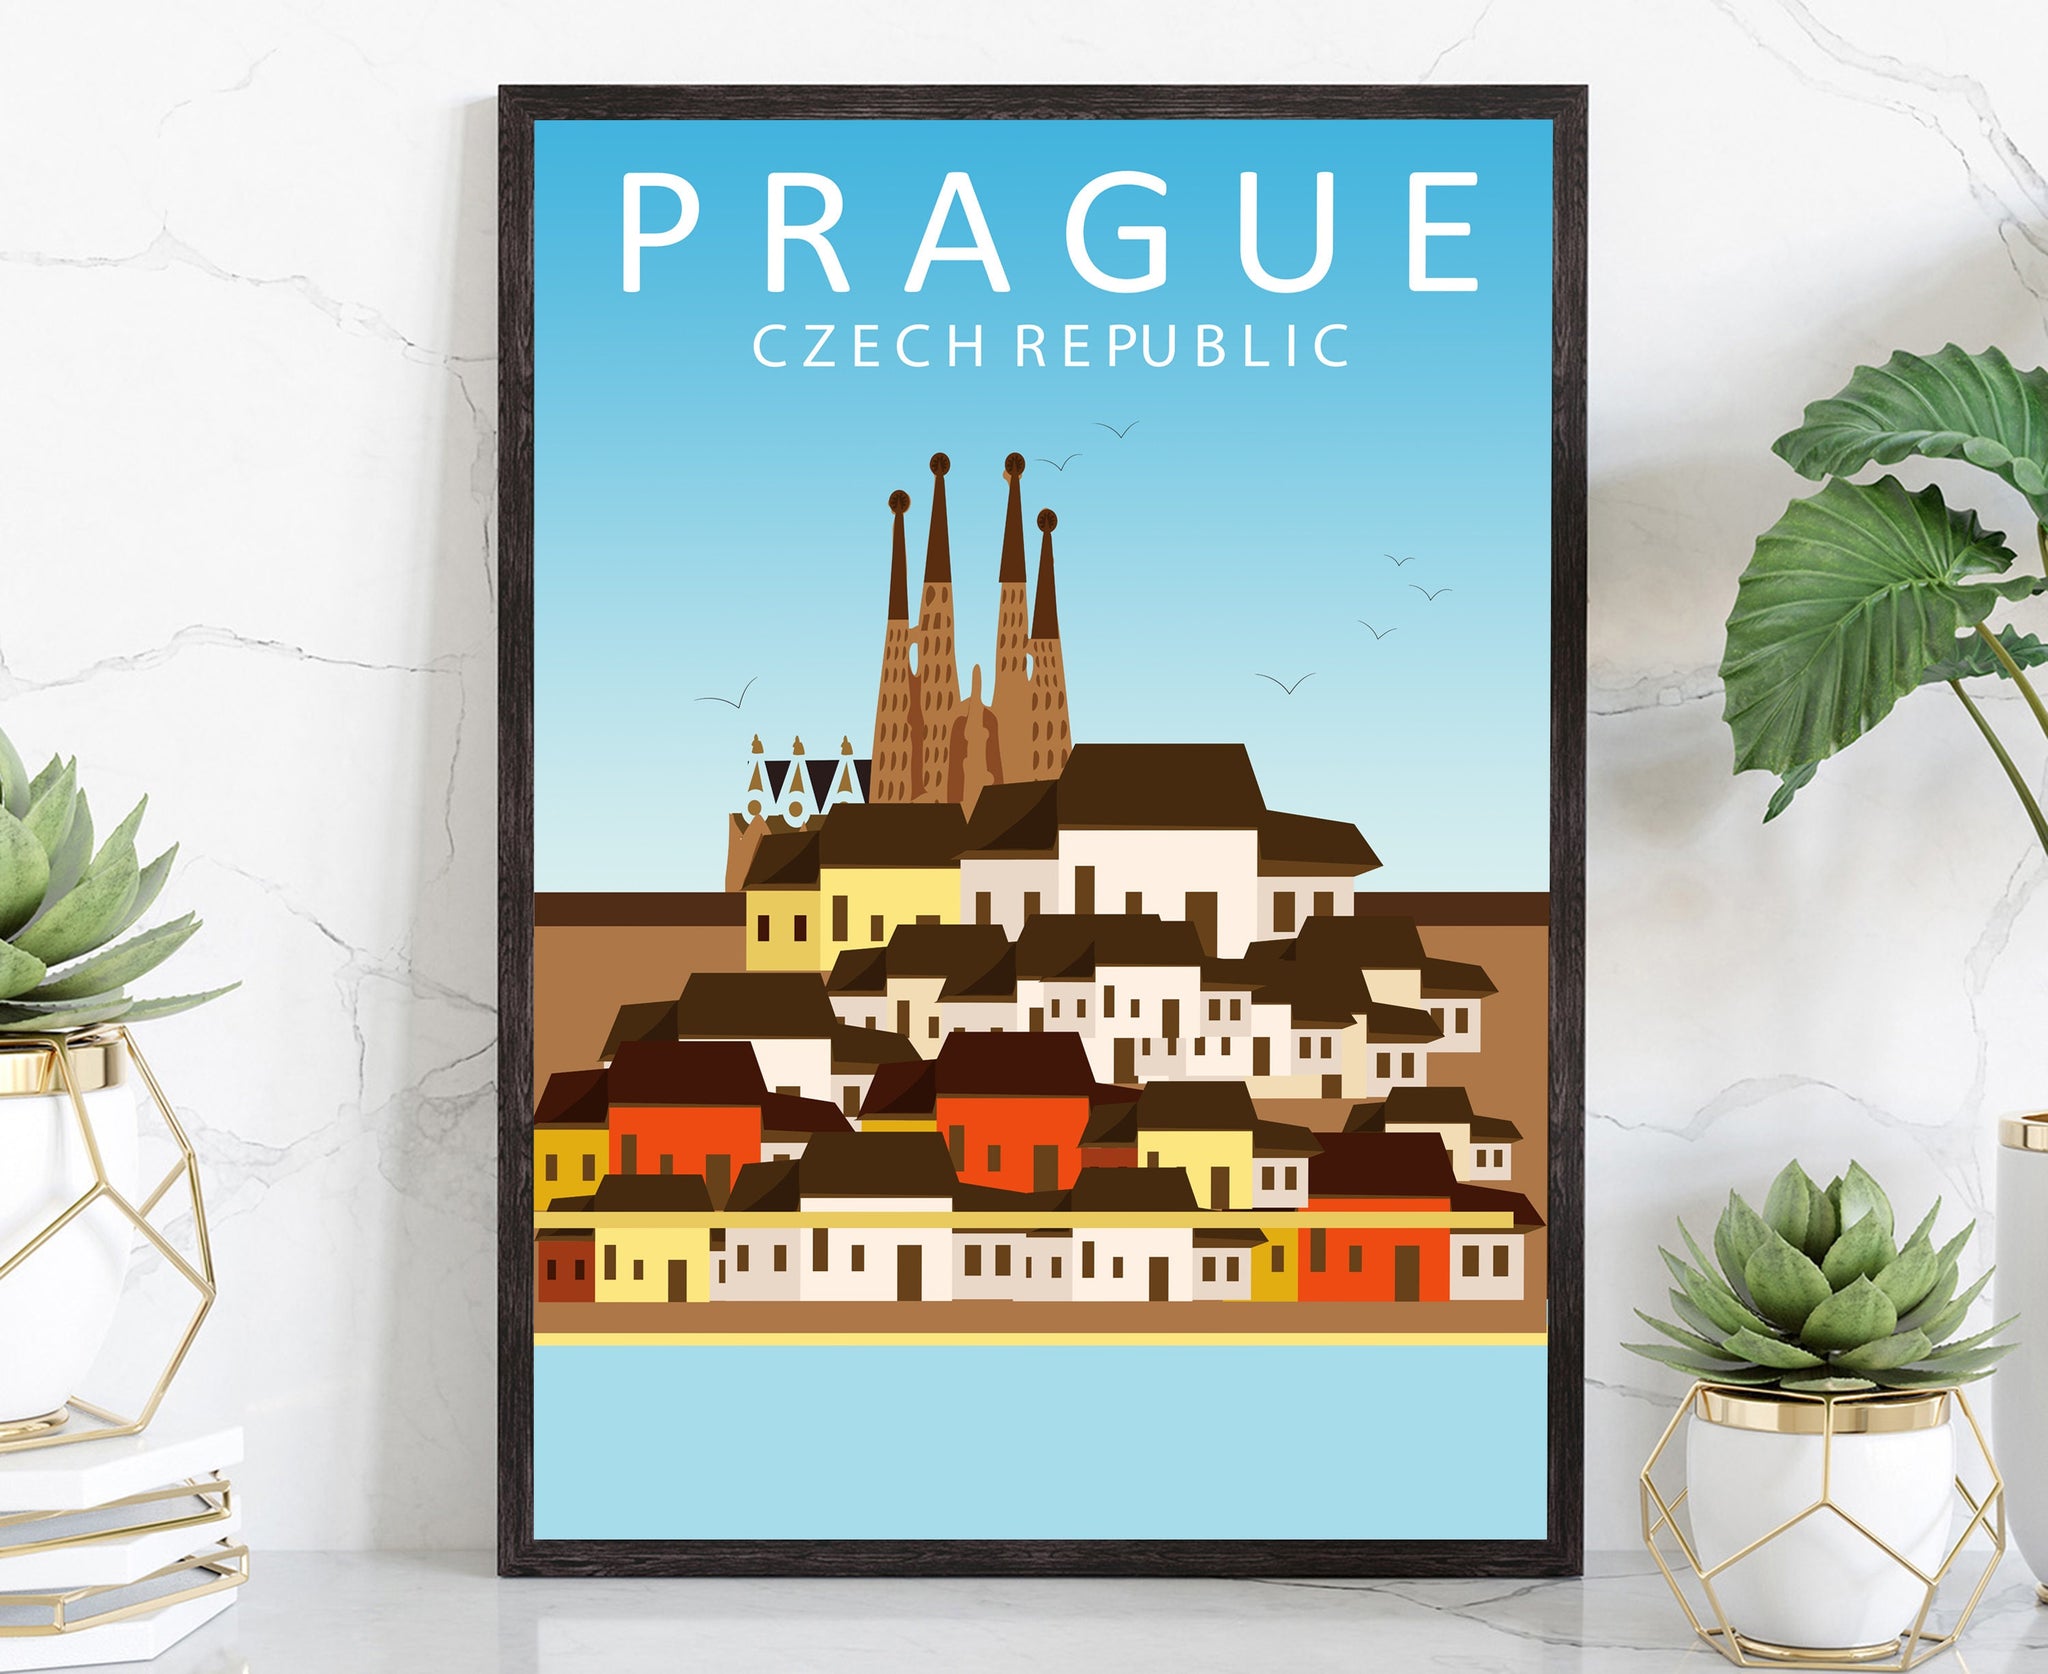 CZECH REPUBLIC PRAGUE travel poster, Prague cityscape poster, Prague landmark poster wall art, Home wall art, Office wall decoration